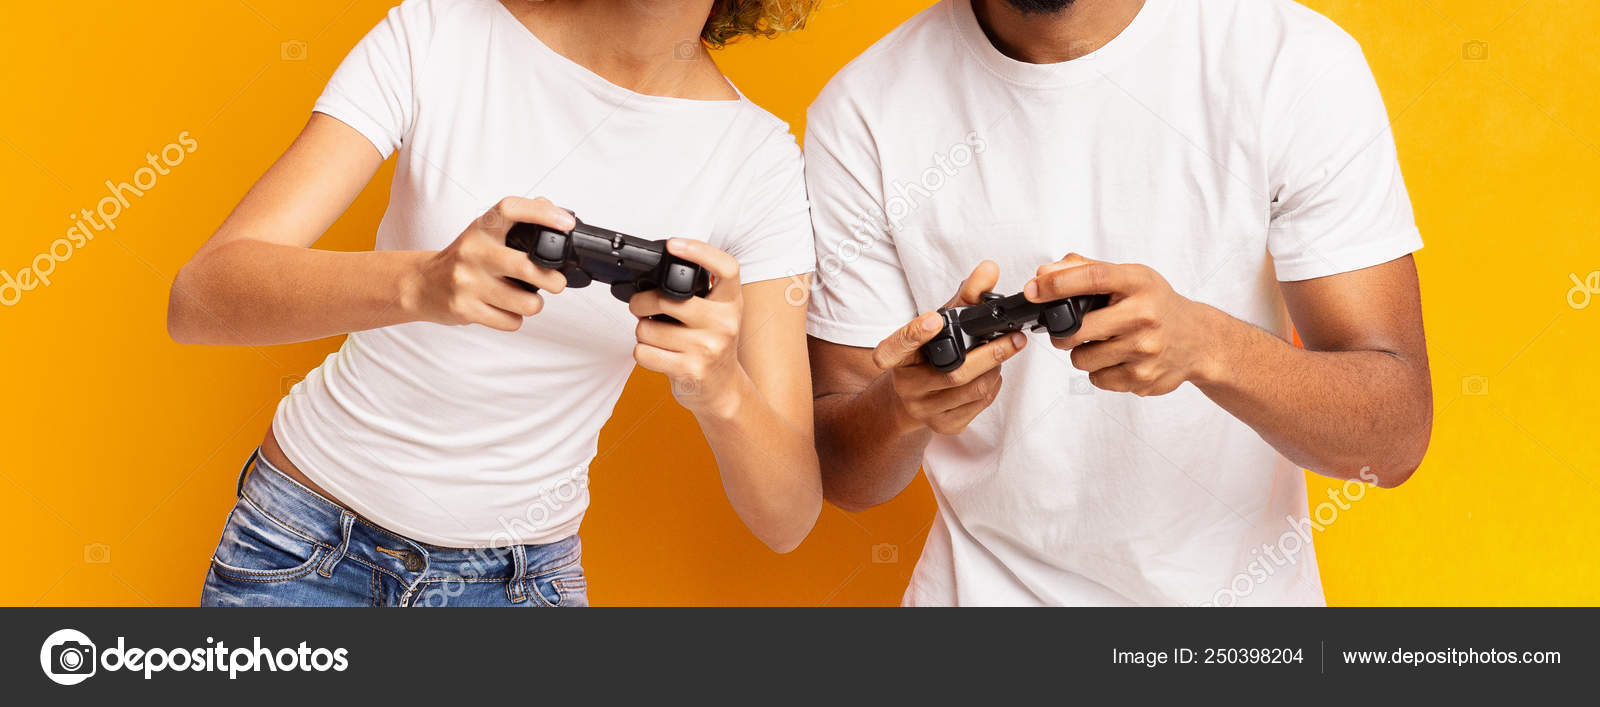 Alegre namorado e namorada jogando videogame para ganhar. casal